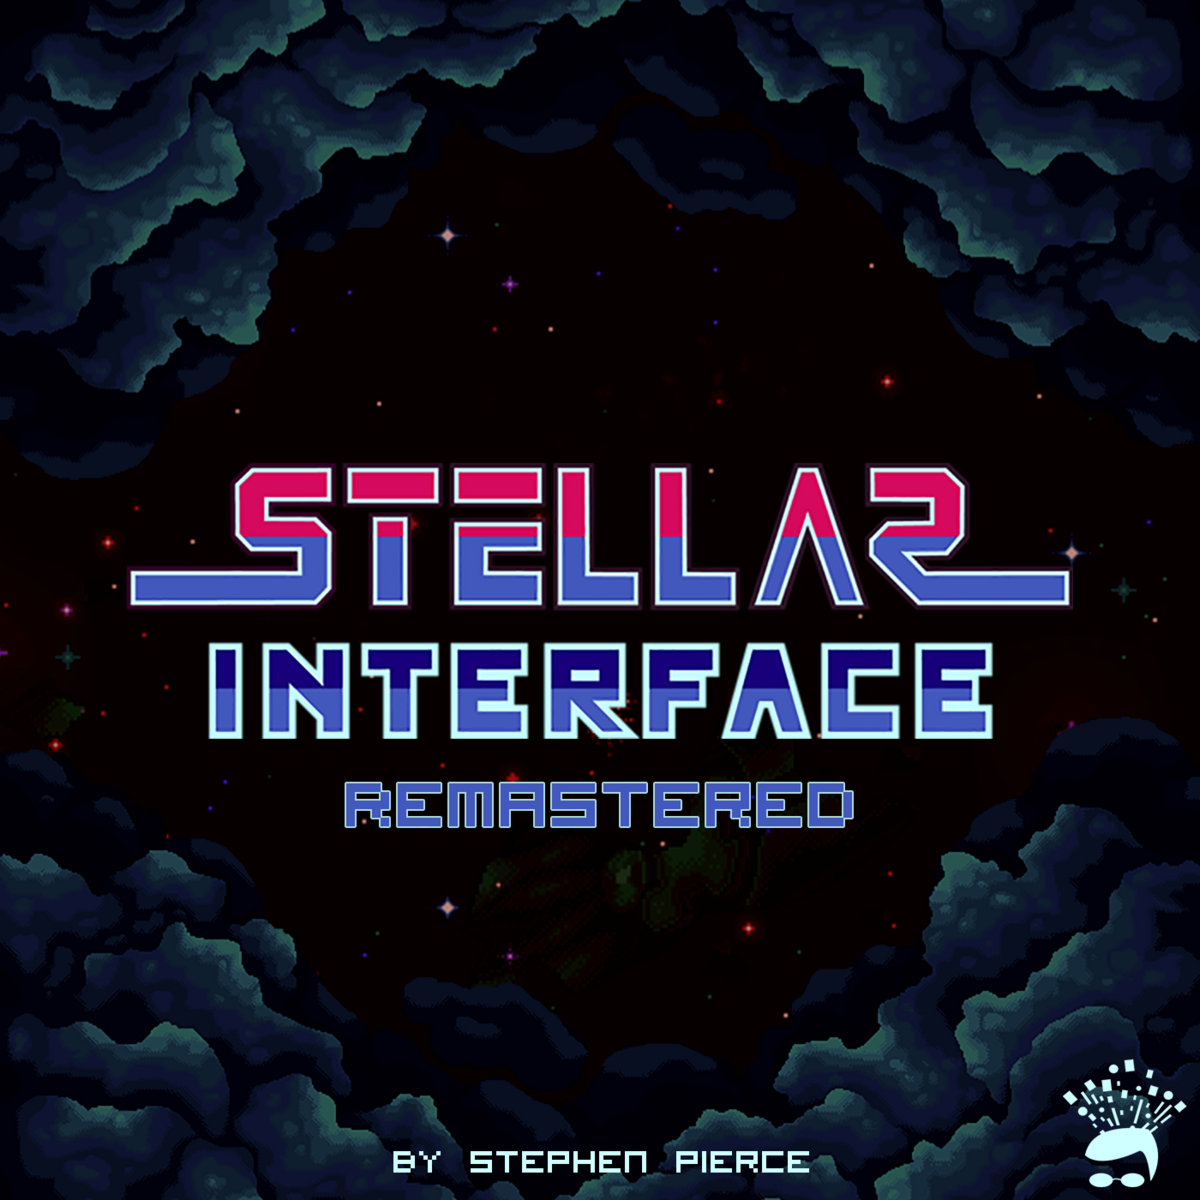 Stellar interface download free